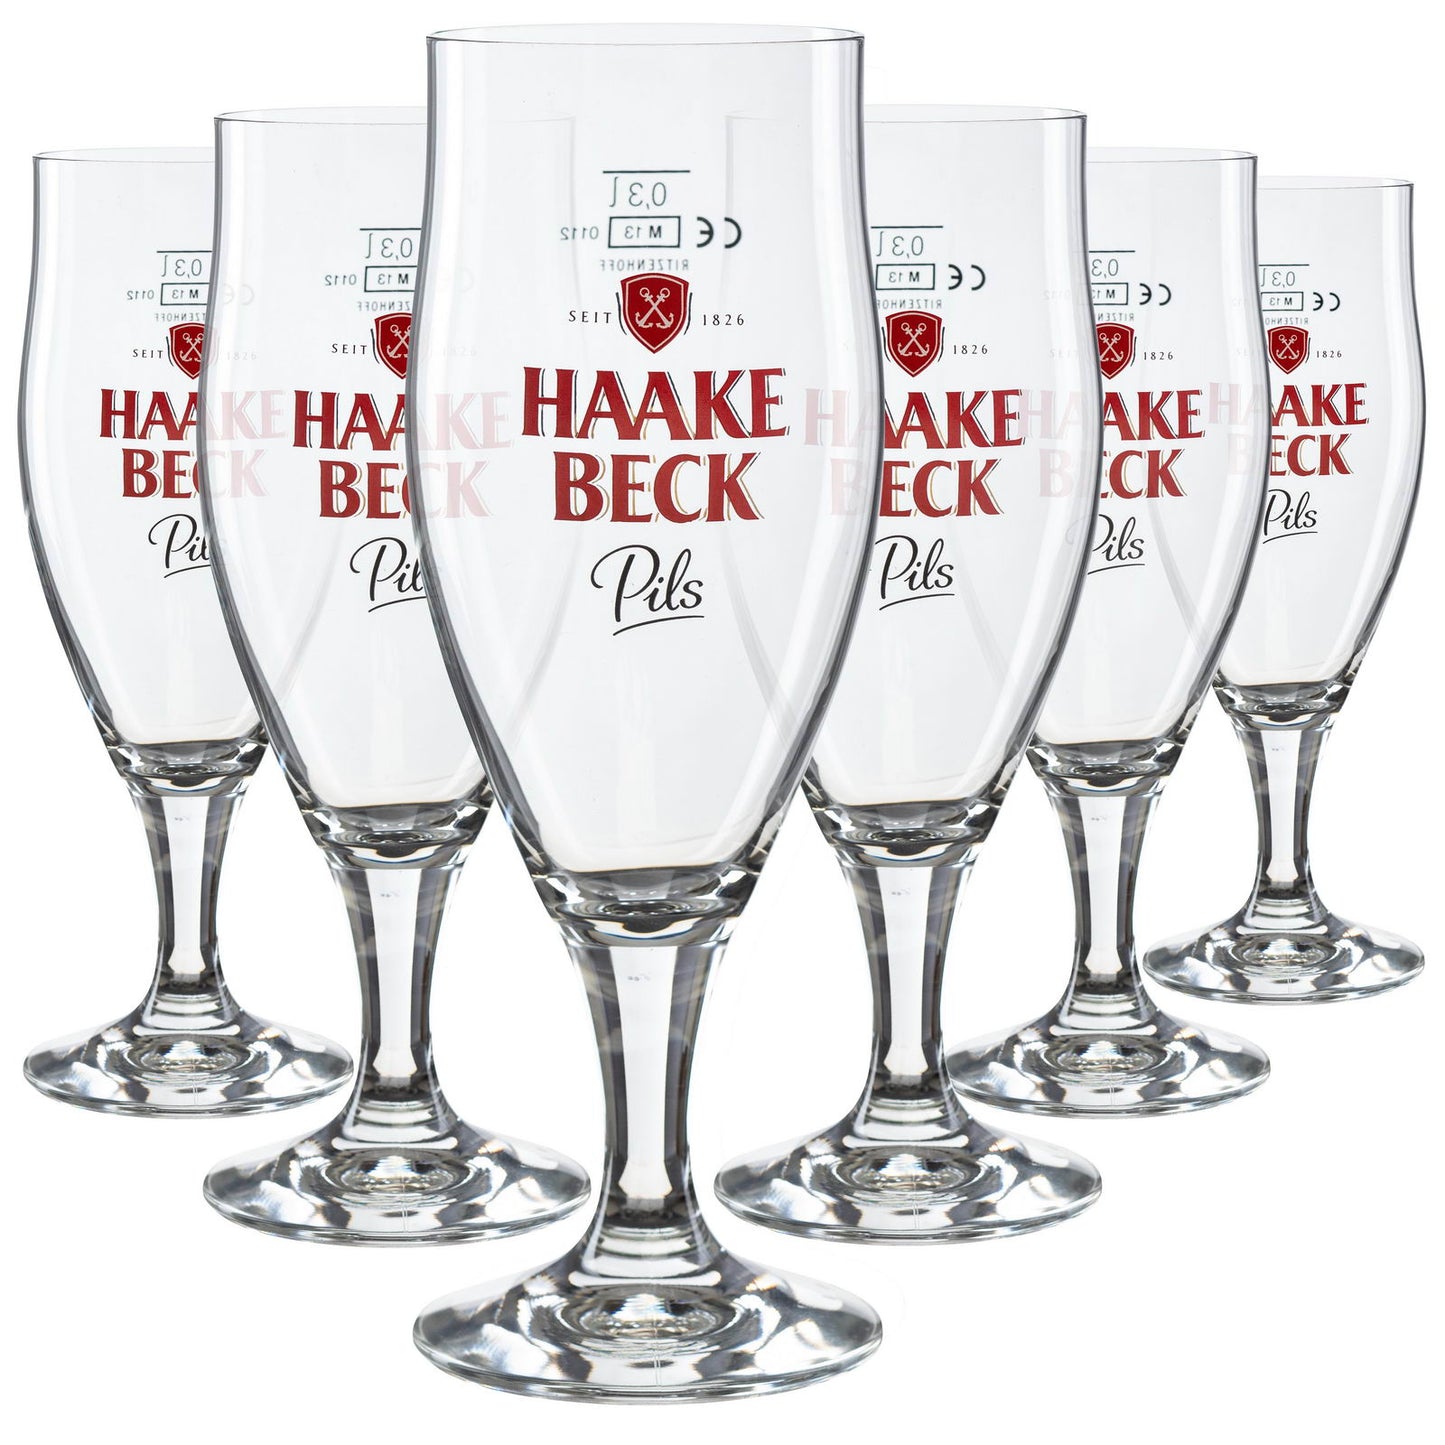 Haake Beck Bierglas Pokal geeicht 0,2l 6er-Set